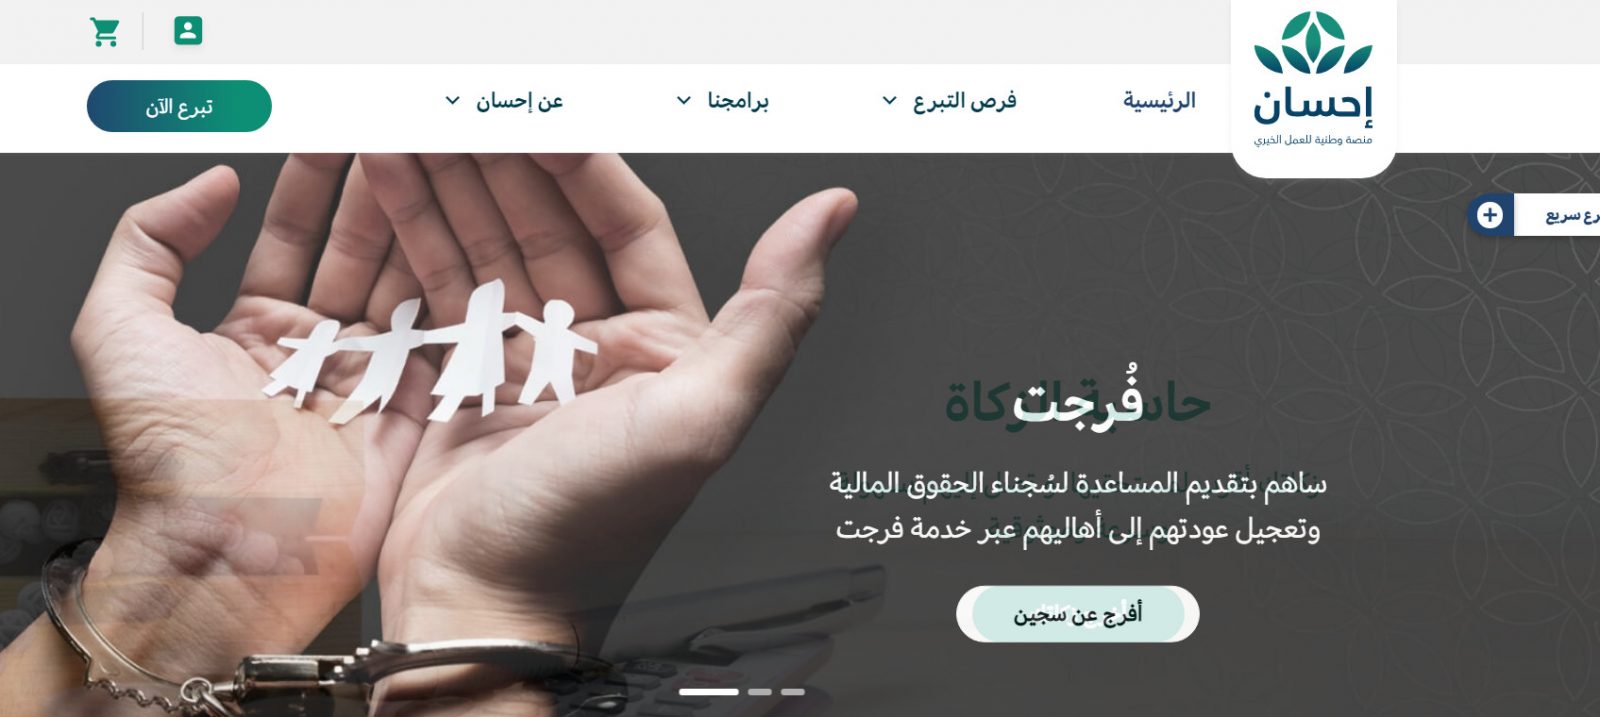 طريقة تسجيل الدخول وانشاء حساب عبر منصة احسان السعودية